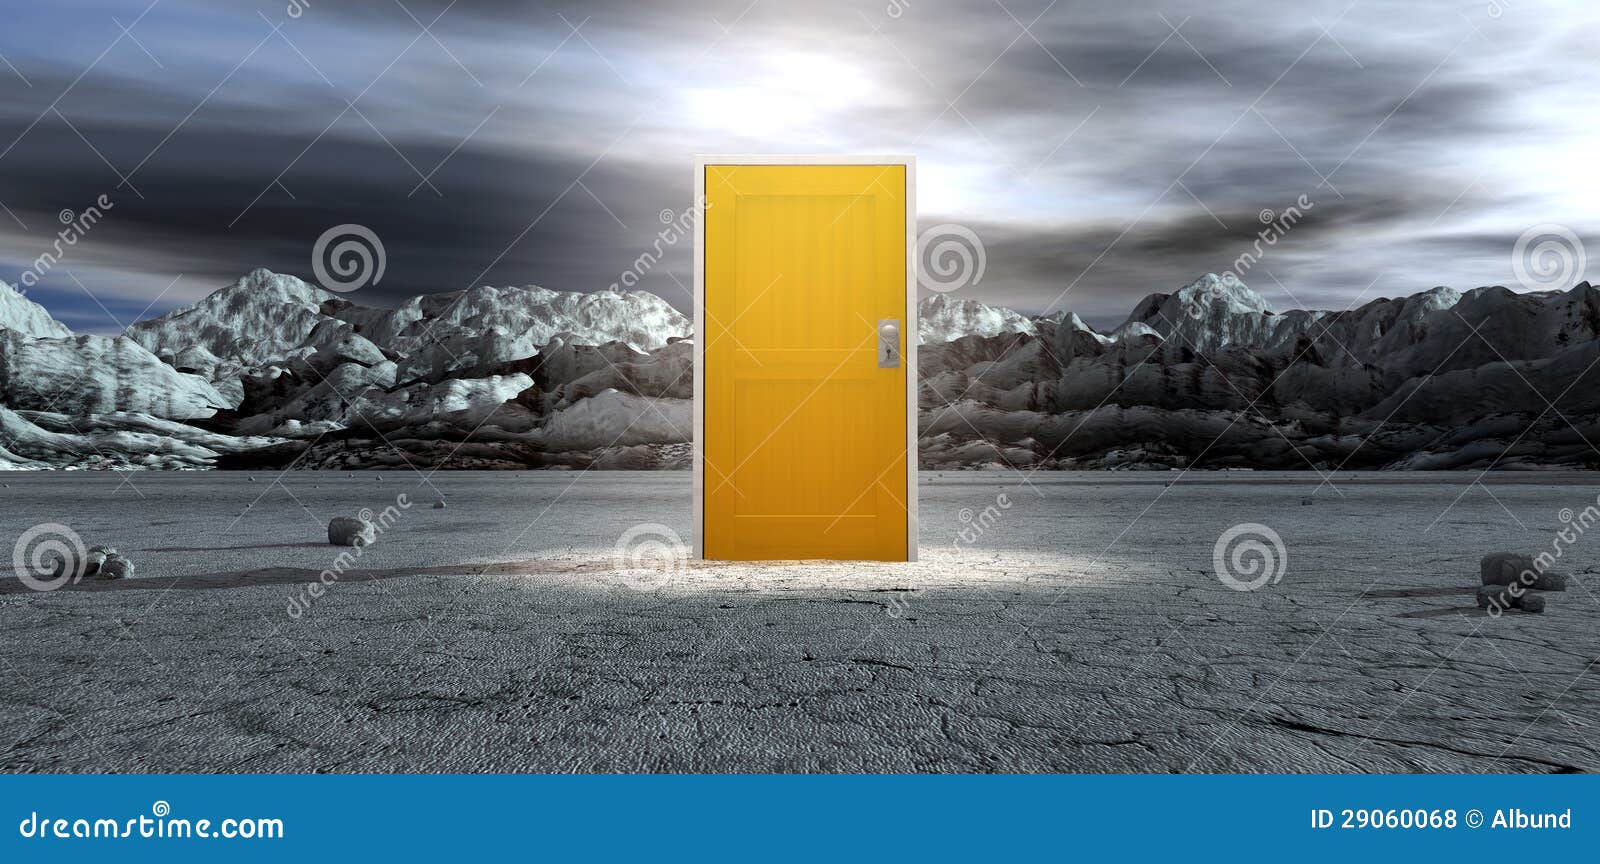 barren lanscape with closed yellow door